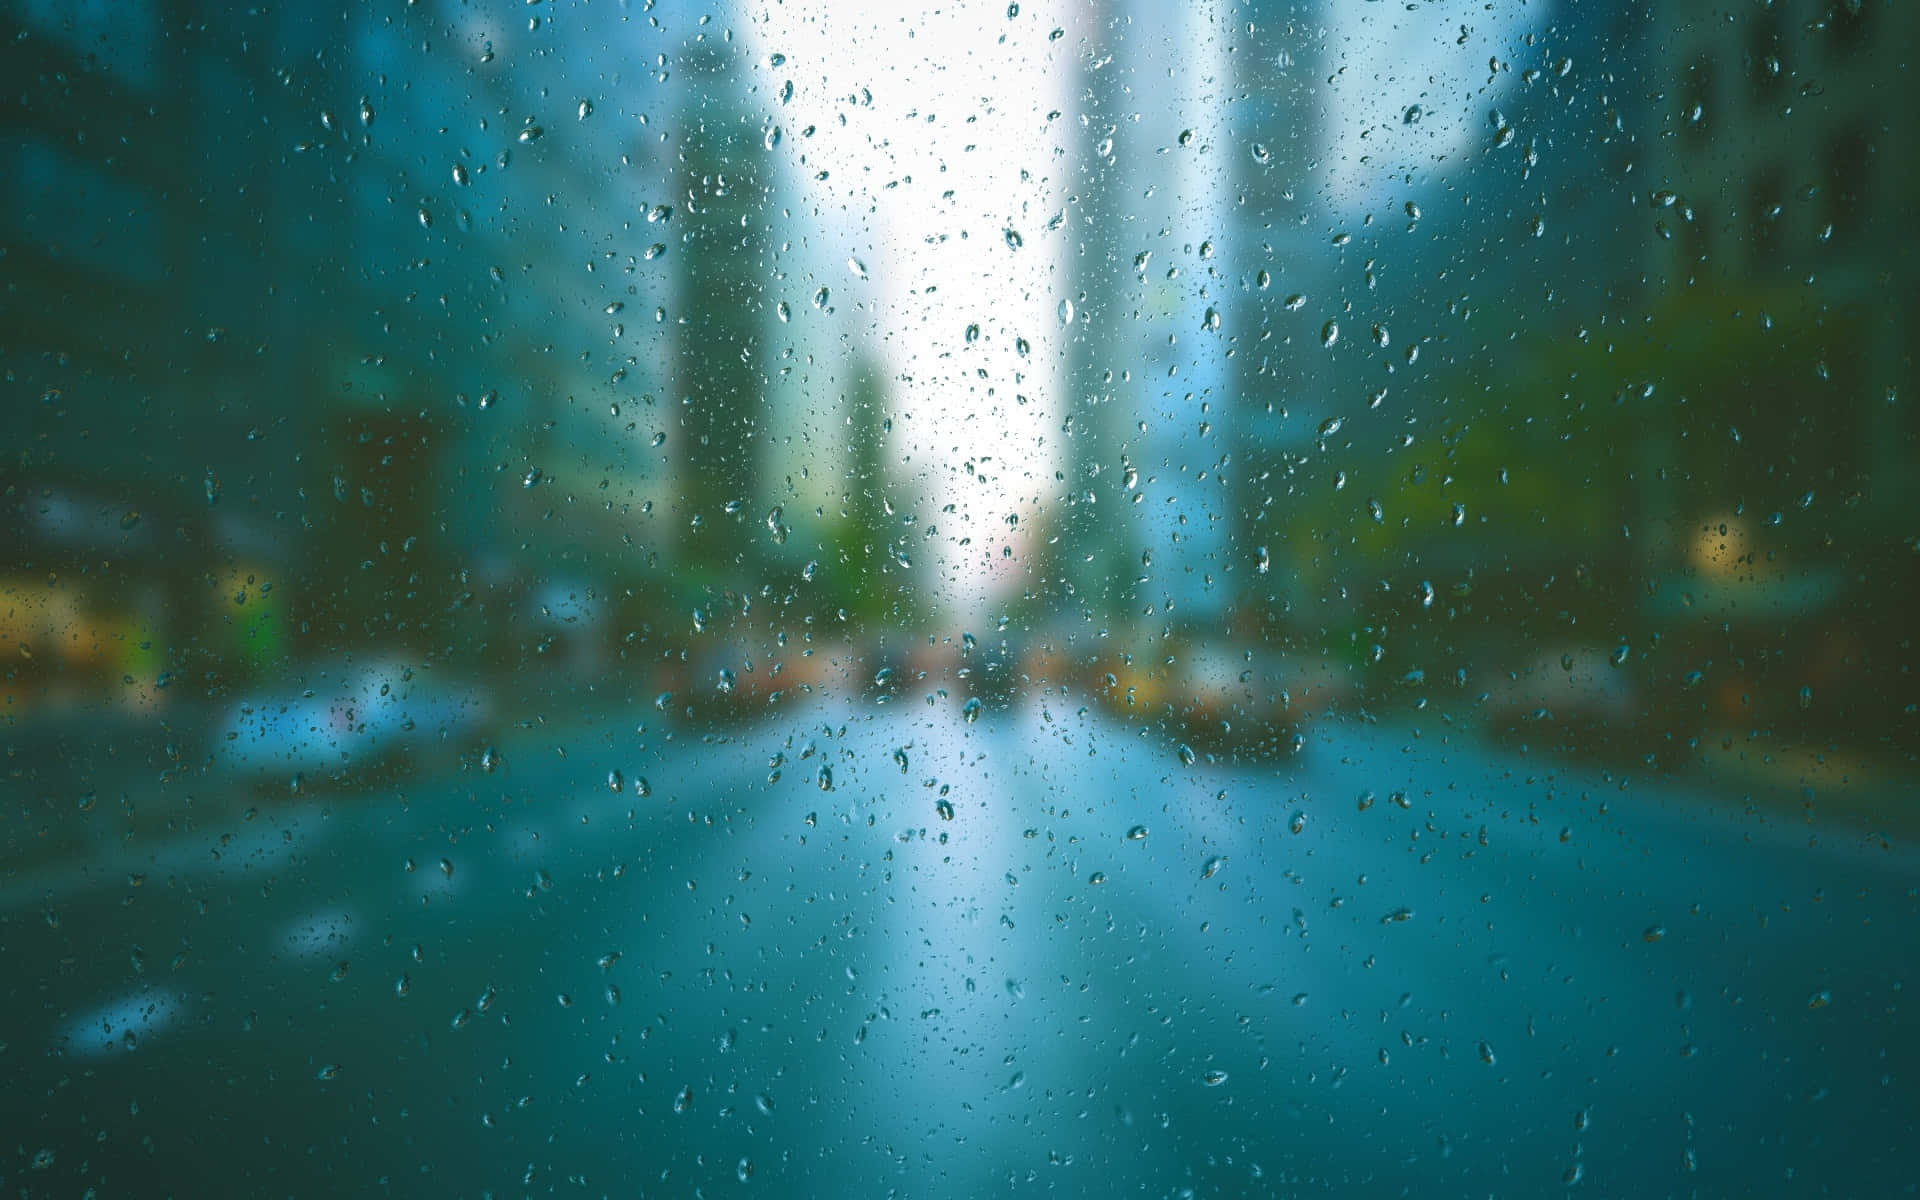 Rainy Themed Background Image Background